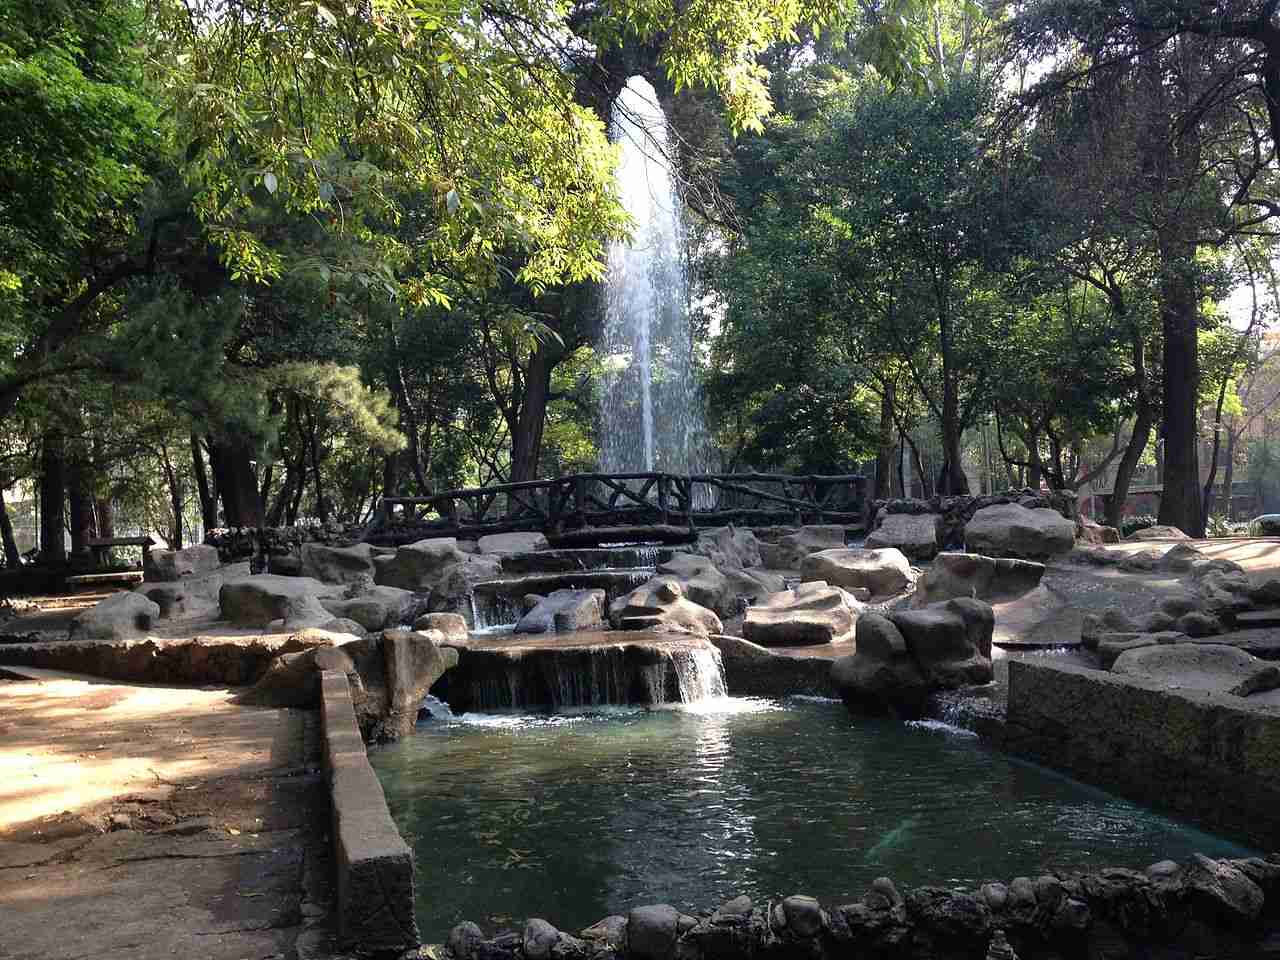 Parque México, Mexico City, Mexico